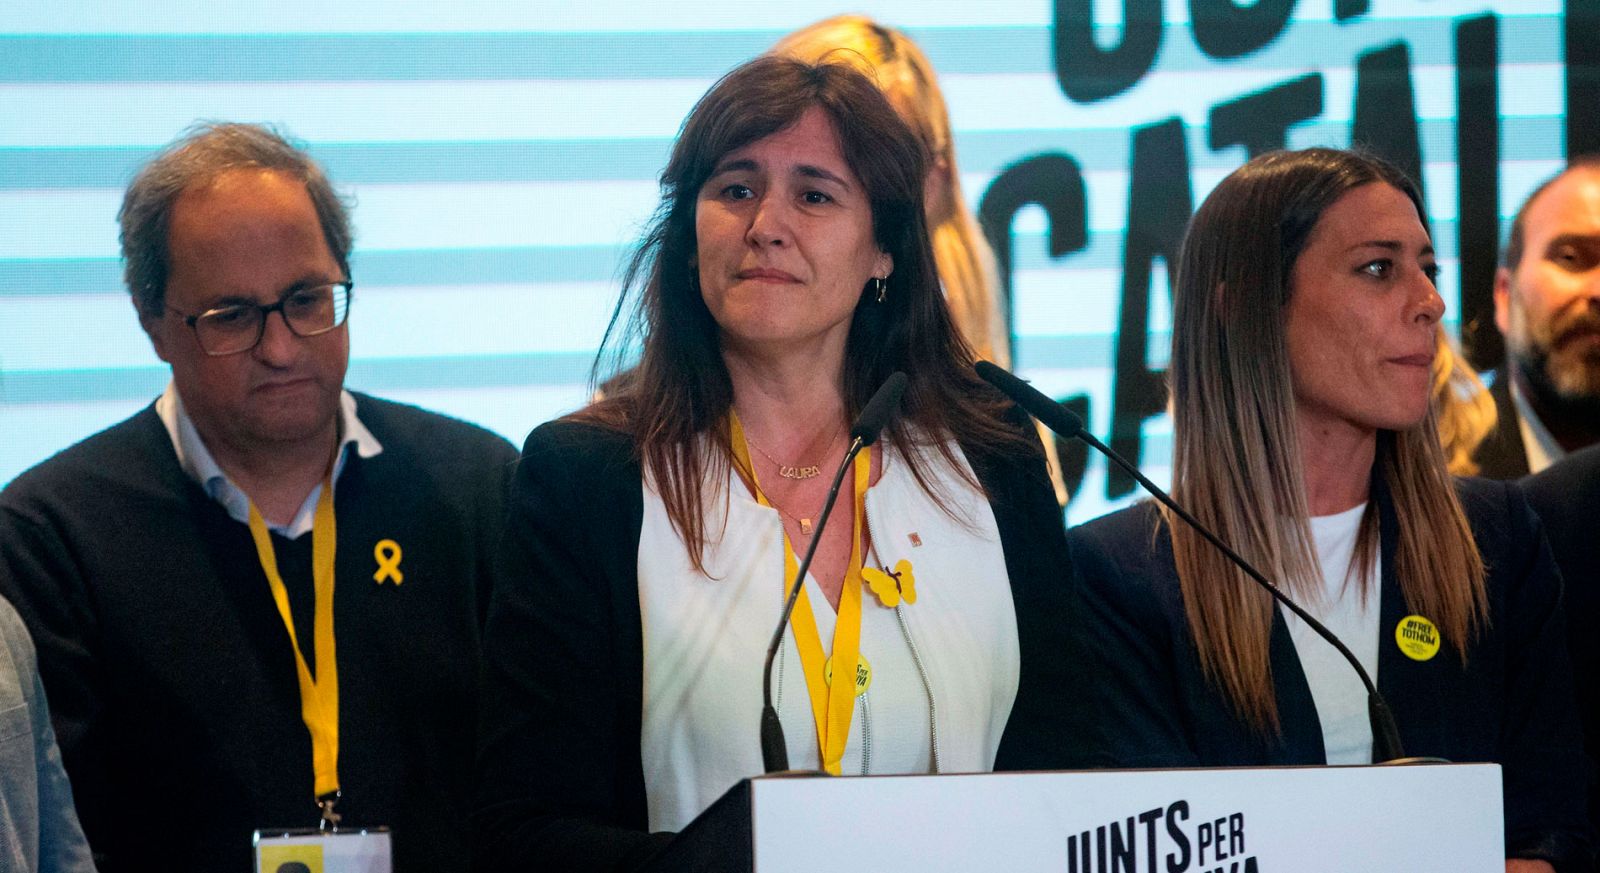 Elecciones Generales | Laura Borràs cree que Catalunya ha obtenido "un muy buen resultado electoral"